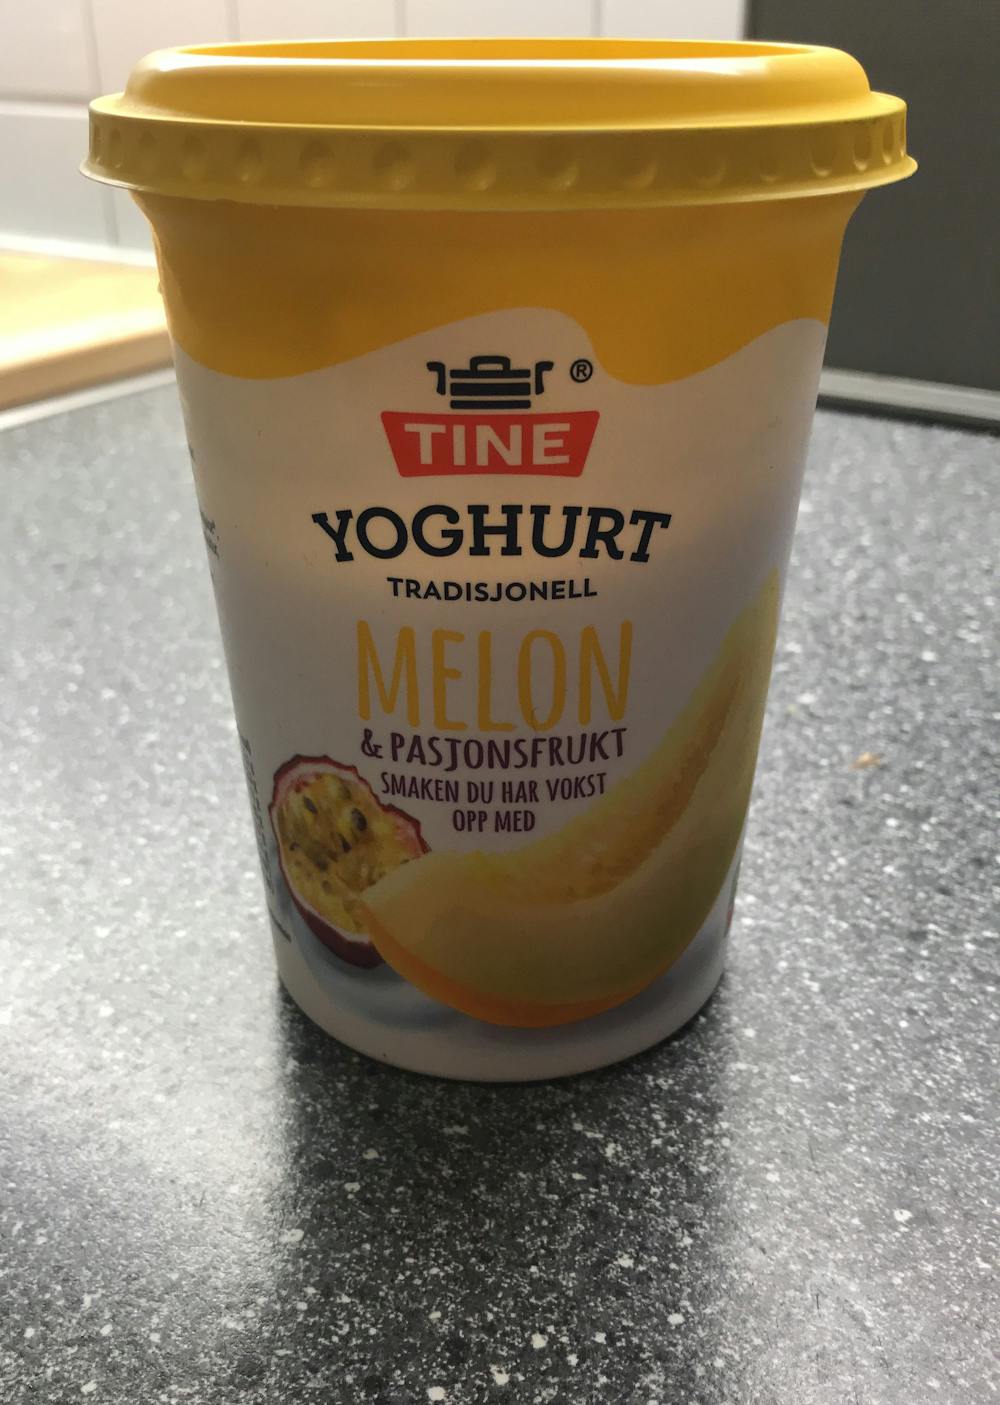 Yoghurt melon & pasjonsfrukt 500g, Tine